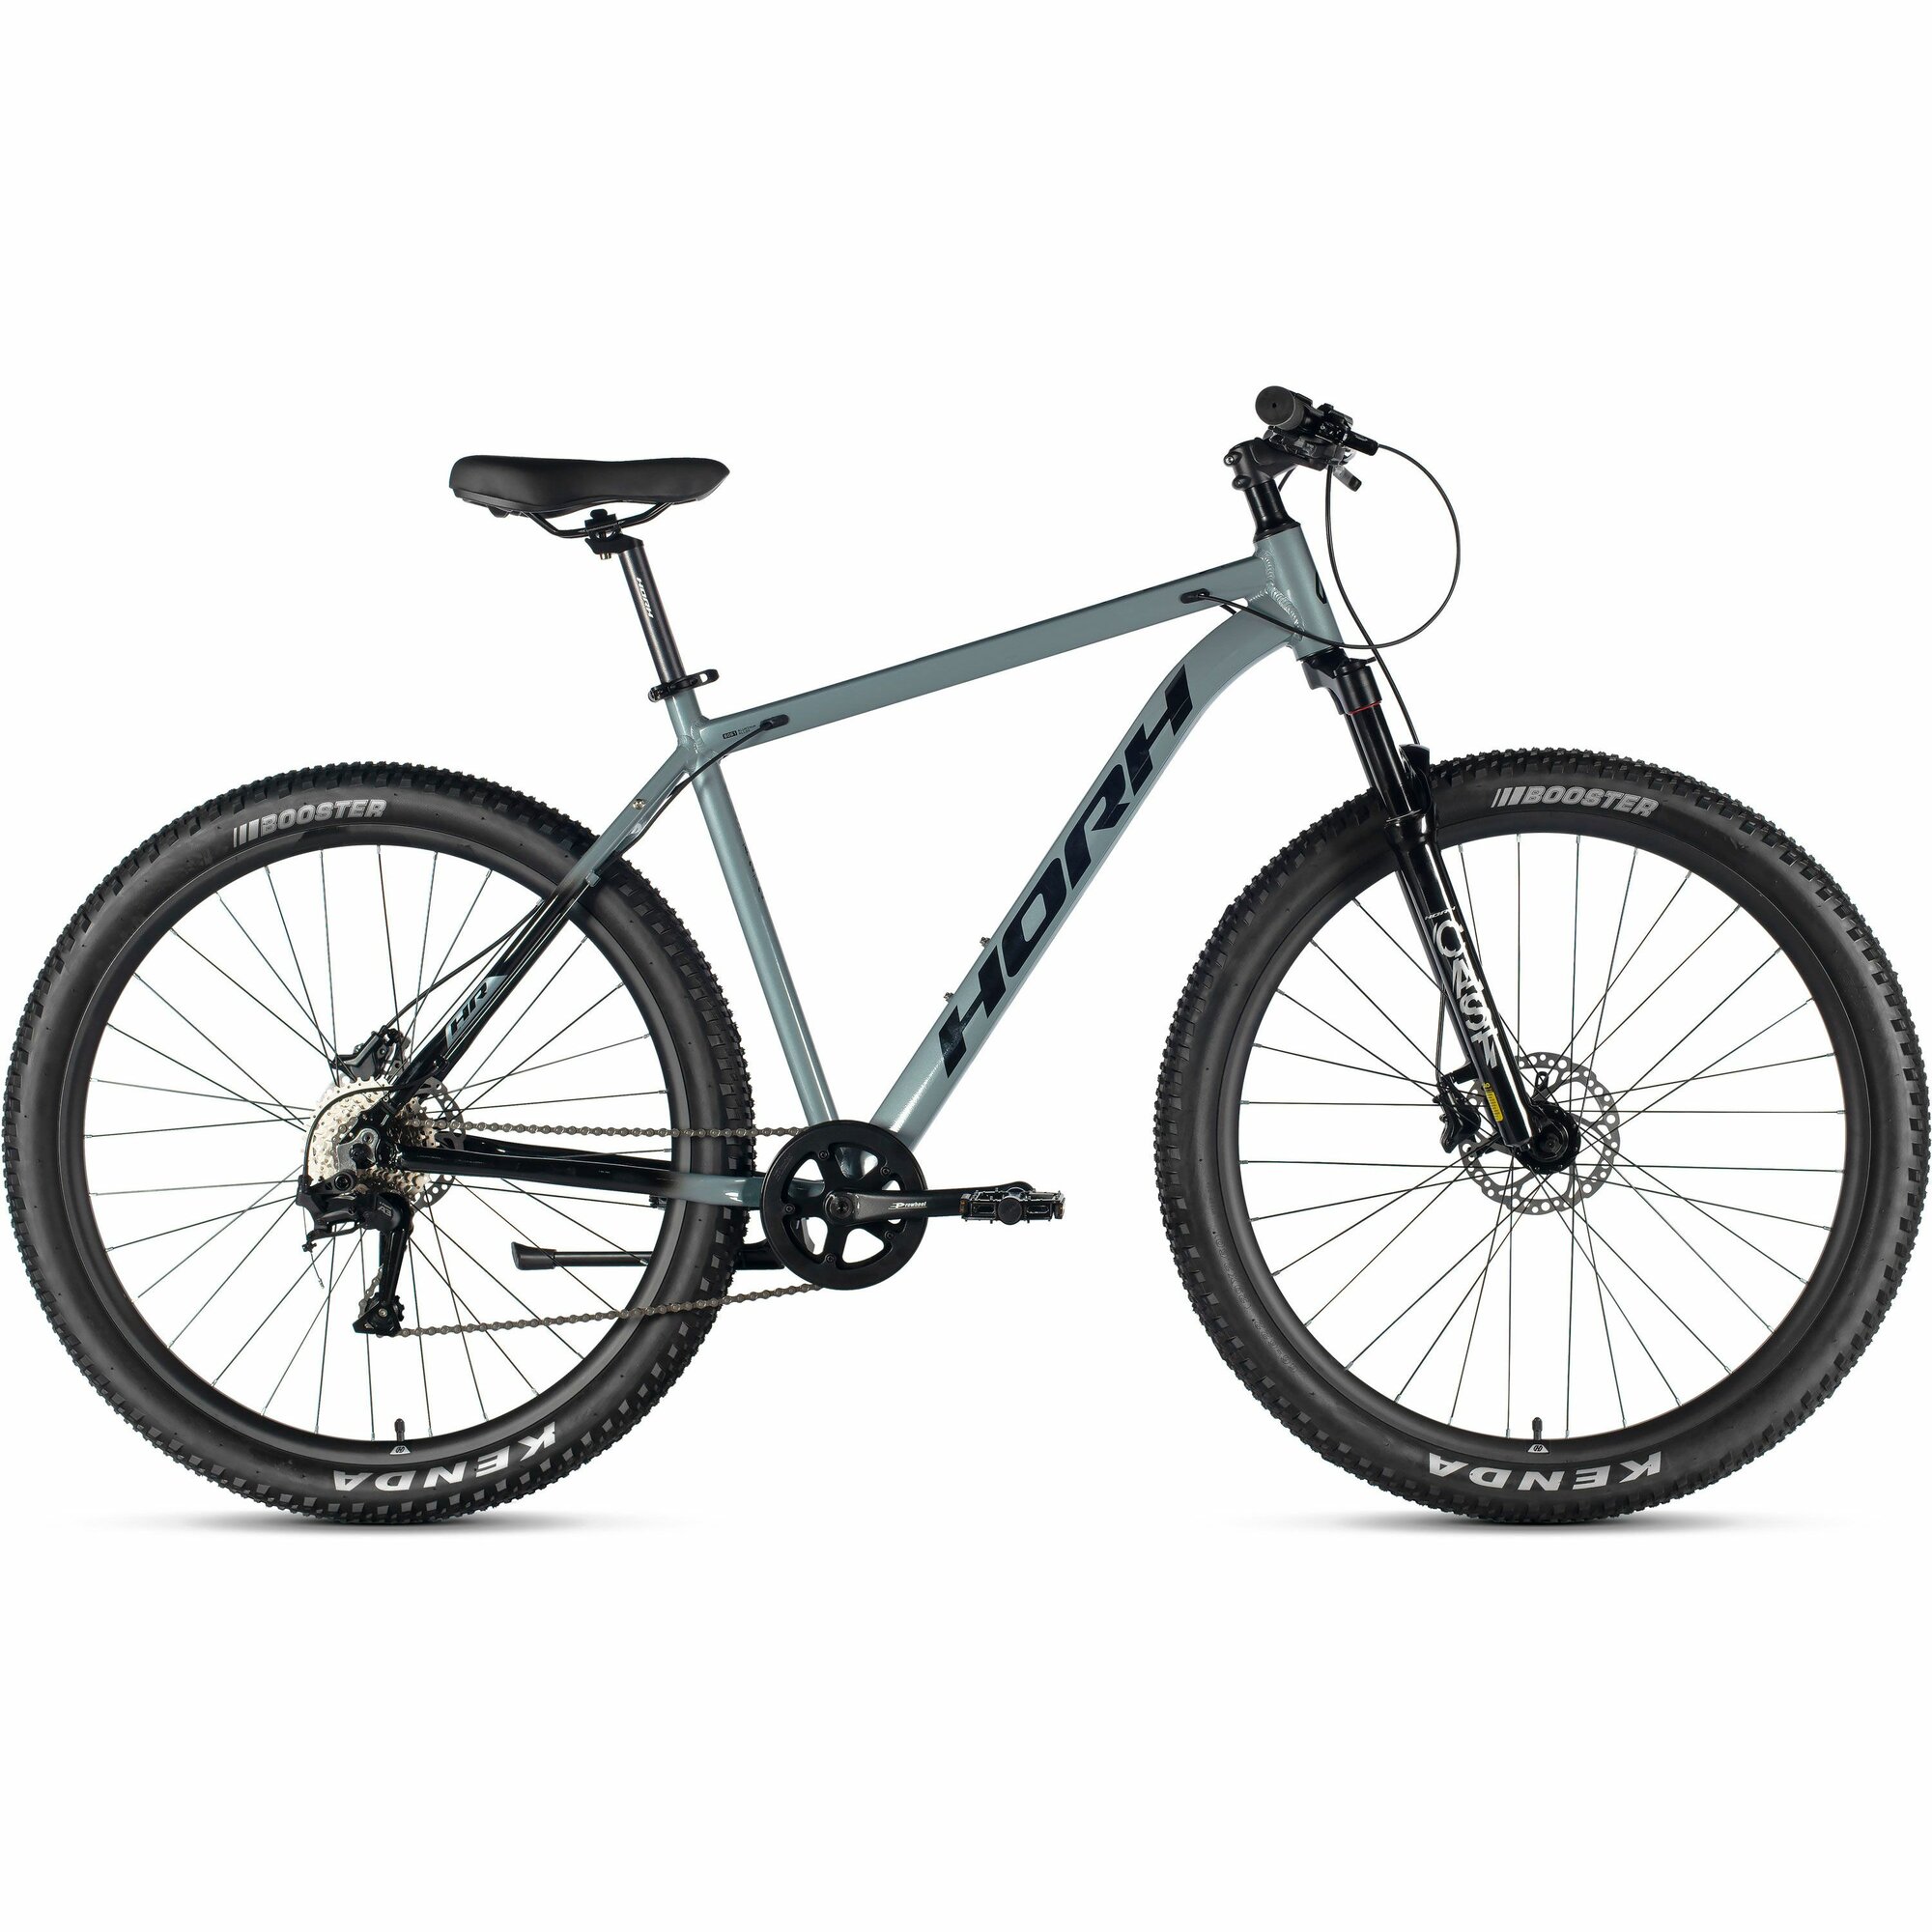 Велосипед горный HORH Cast AM 29" (2024), хардтейл, взрослый, мужской, алюминиевая рама, 8 скоростей, дисковые гидравлические тормоза, цвет Grey-Black, серый/черный цвет, размер рамы 19", для роста 180-190 см